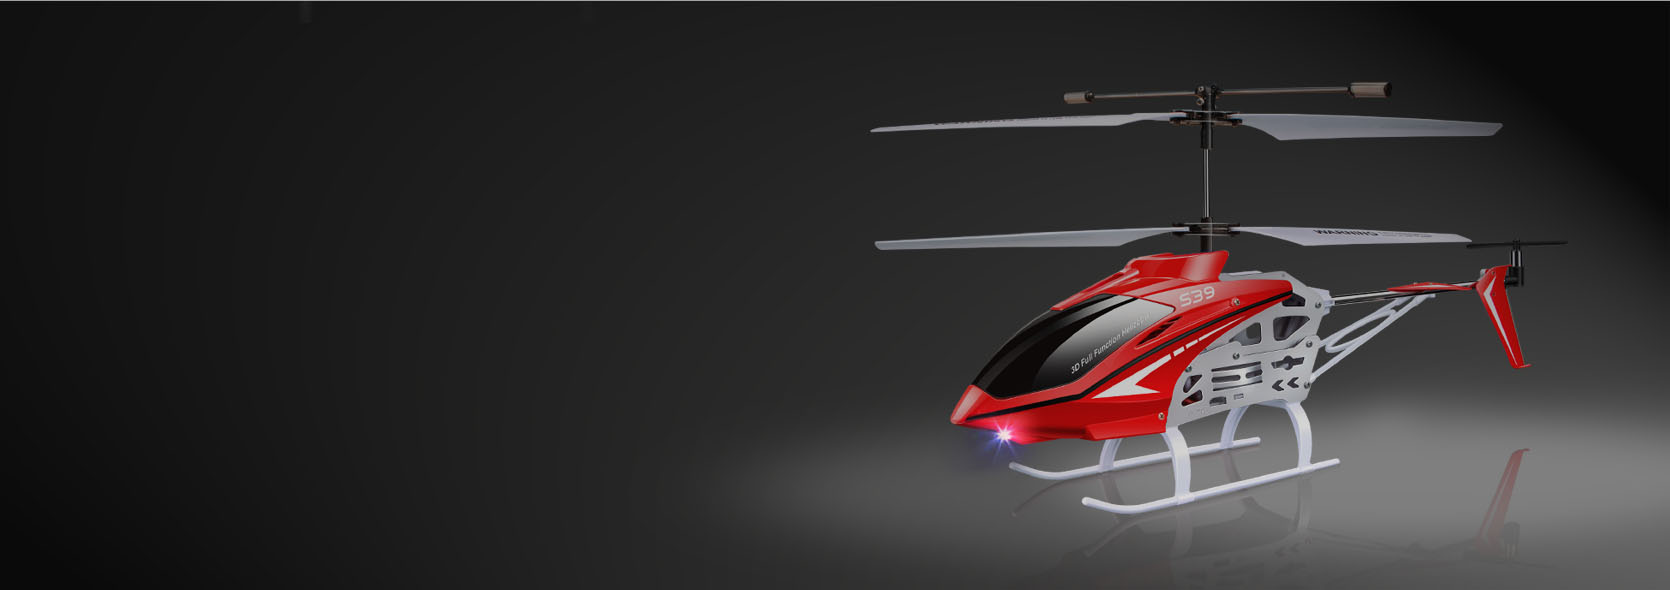 Syma Hélicoptère télécommandé RC S39 3,5 canaux 2,4 GHz Gyroscope Maintien de l'altitude Intérieur Haute vitesse Jouet Enfants Adultes 